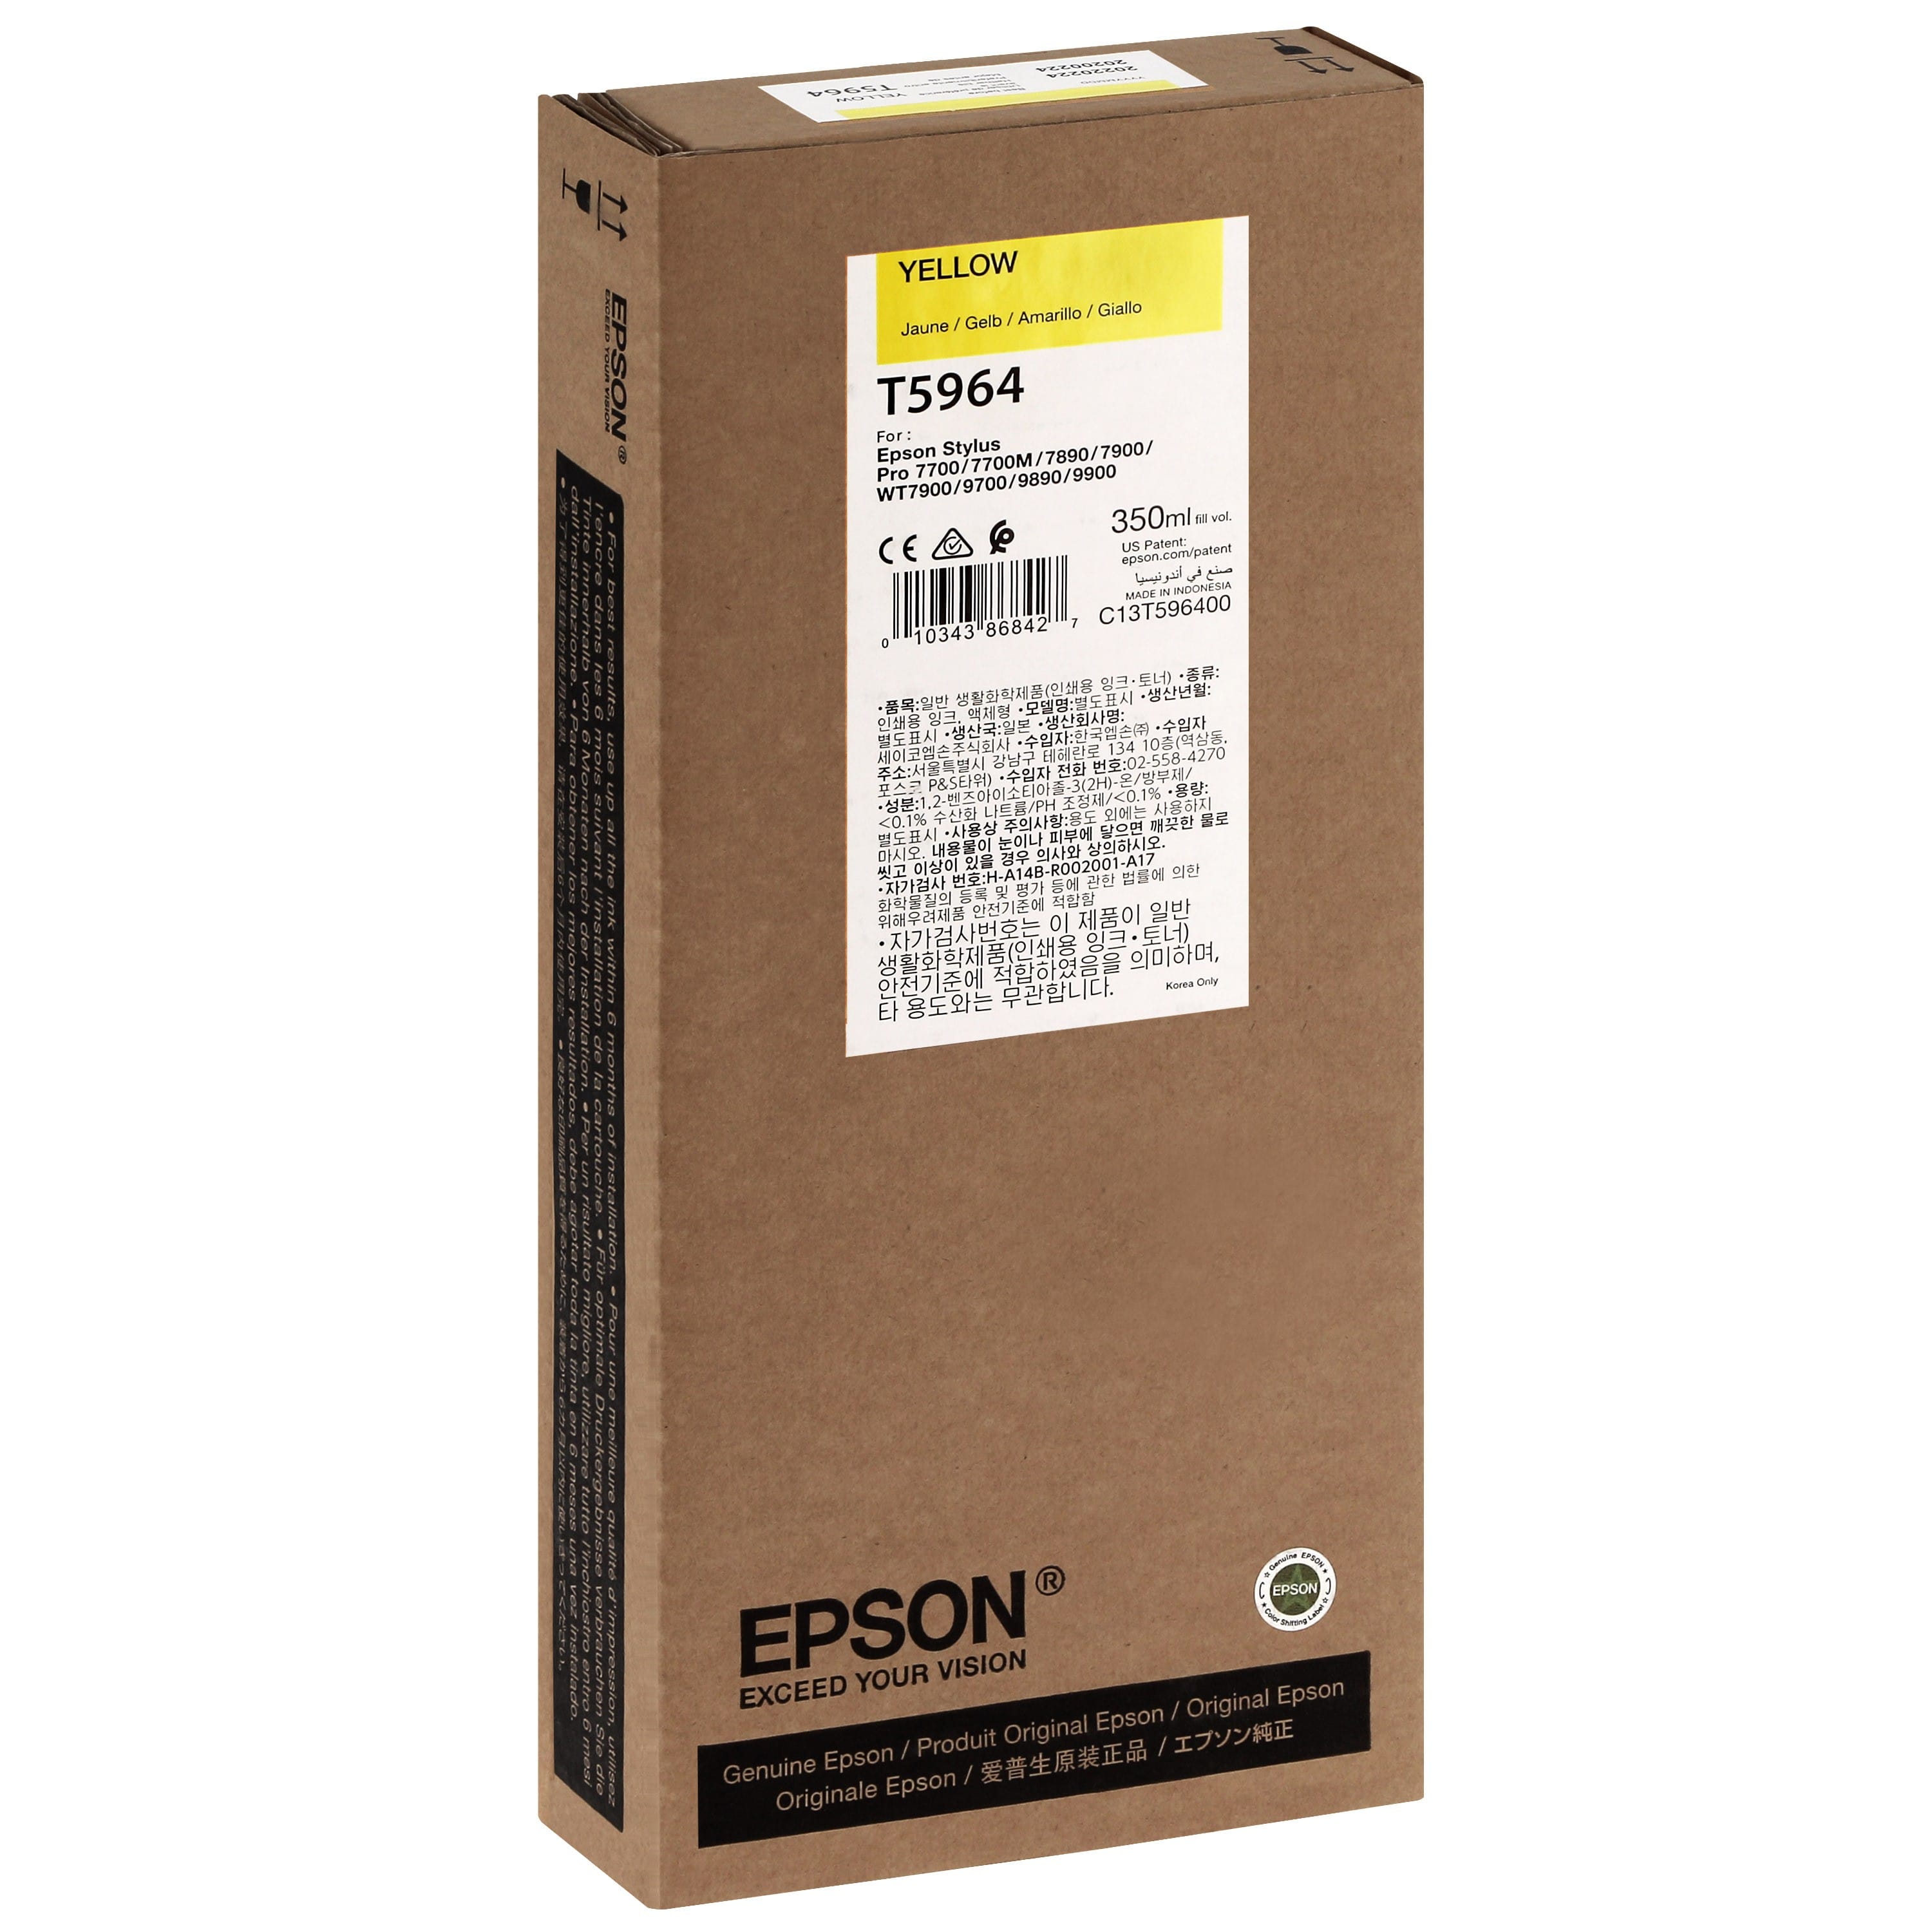 EPSON - Cartouche d'encre traceur T5964 Pour imprimante 7700/9700/7890/9890/7900/9900 Jaune - 350ml